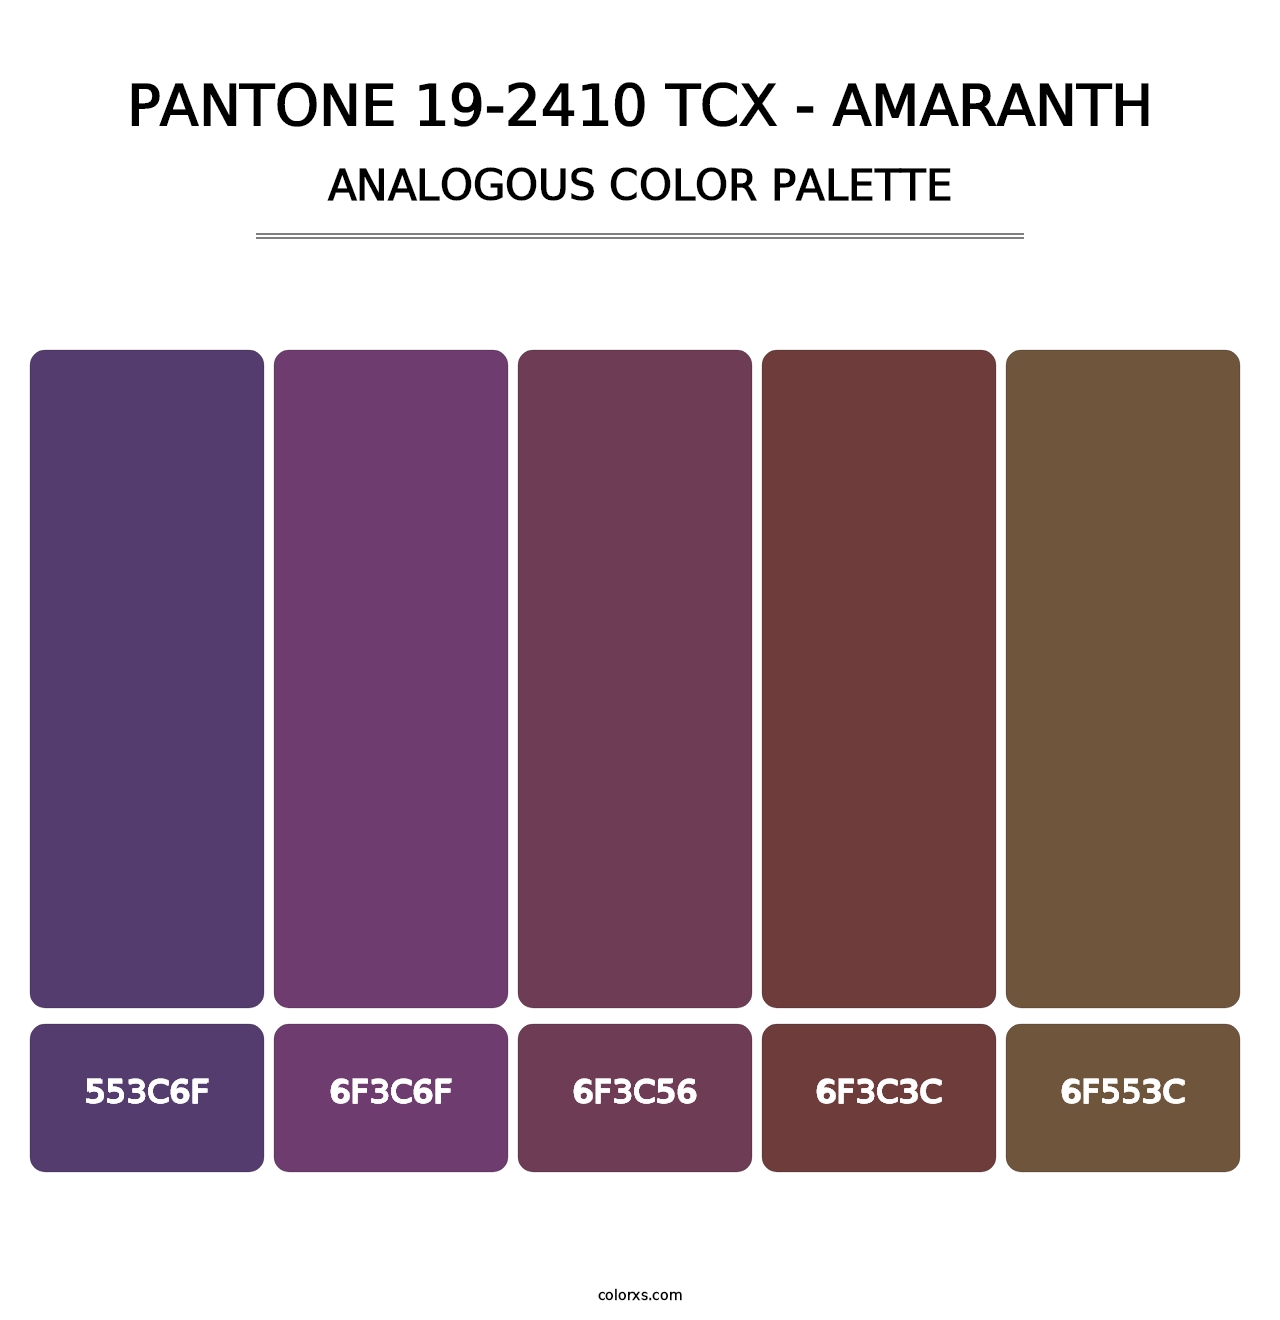 PANTONE 19-2410 TCX - Amaranth - Analogous Color Palette